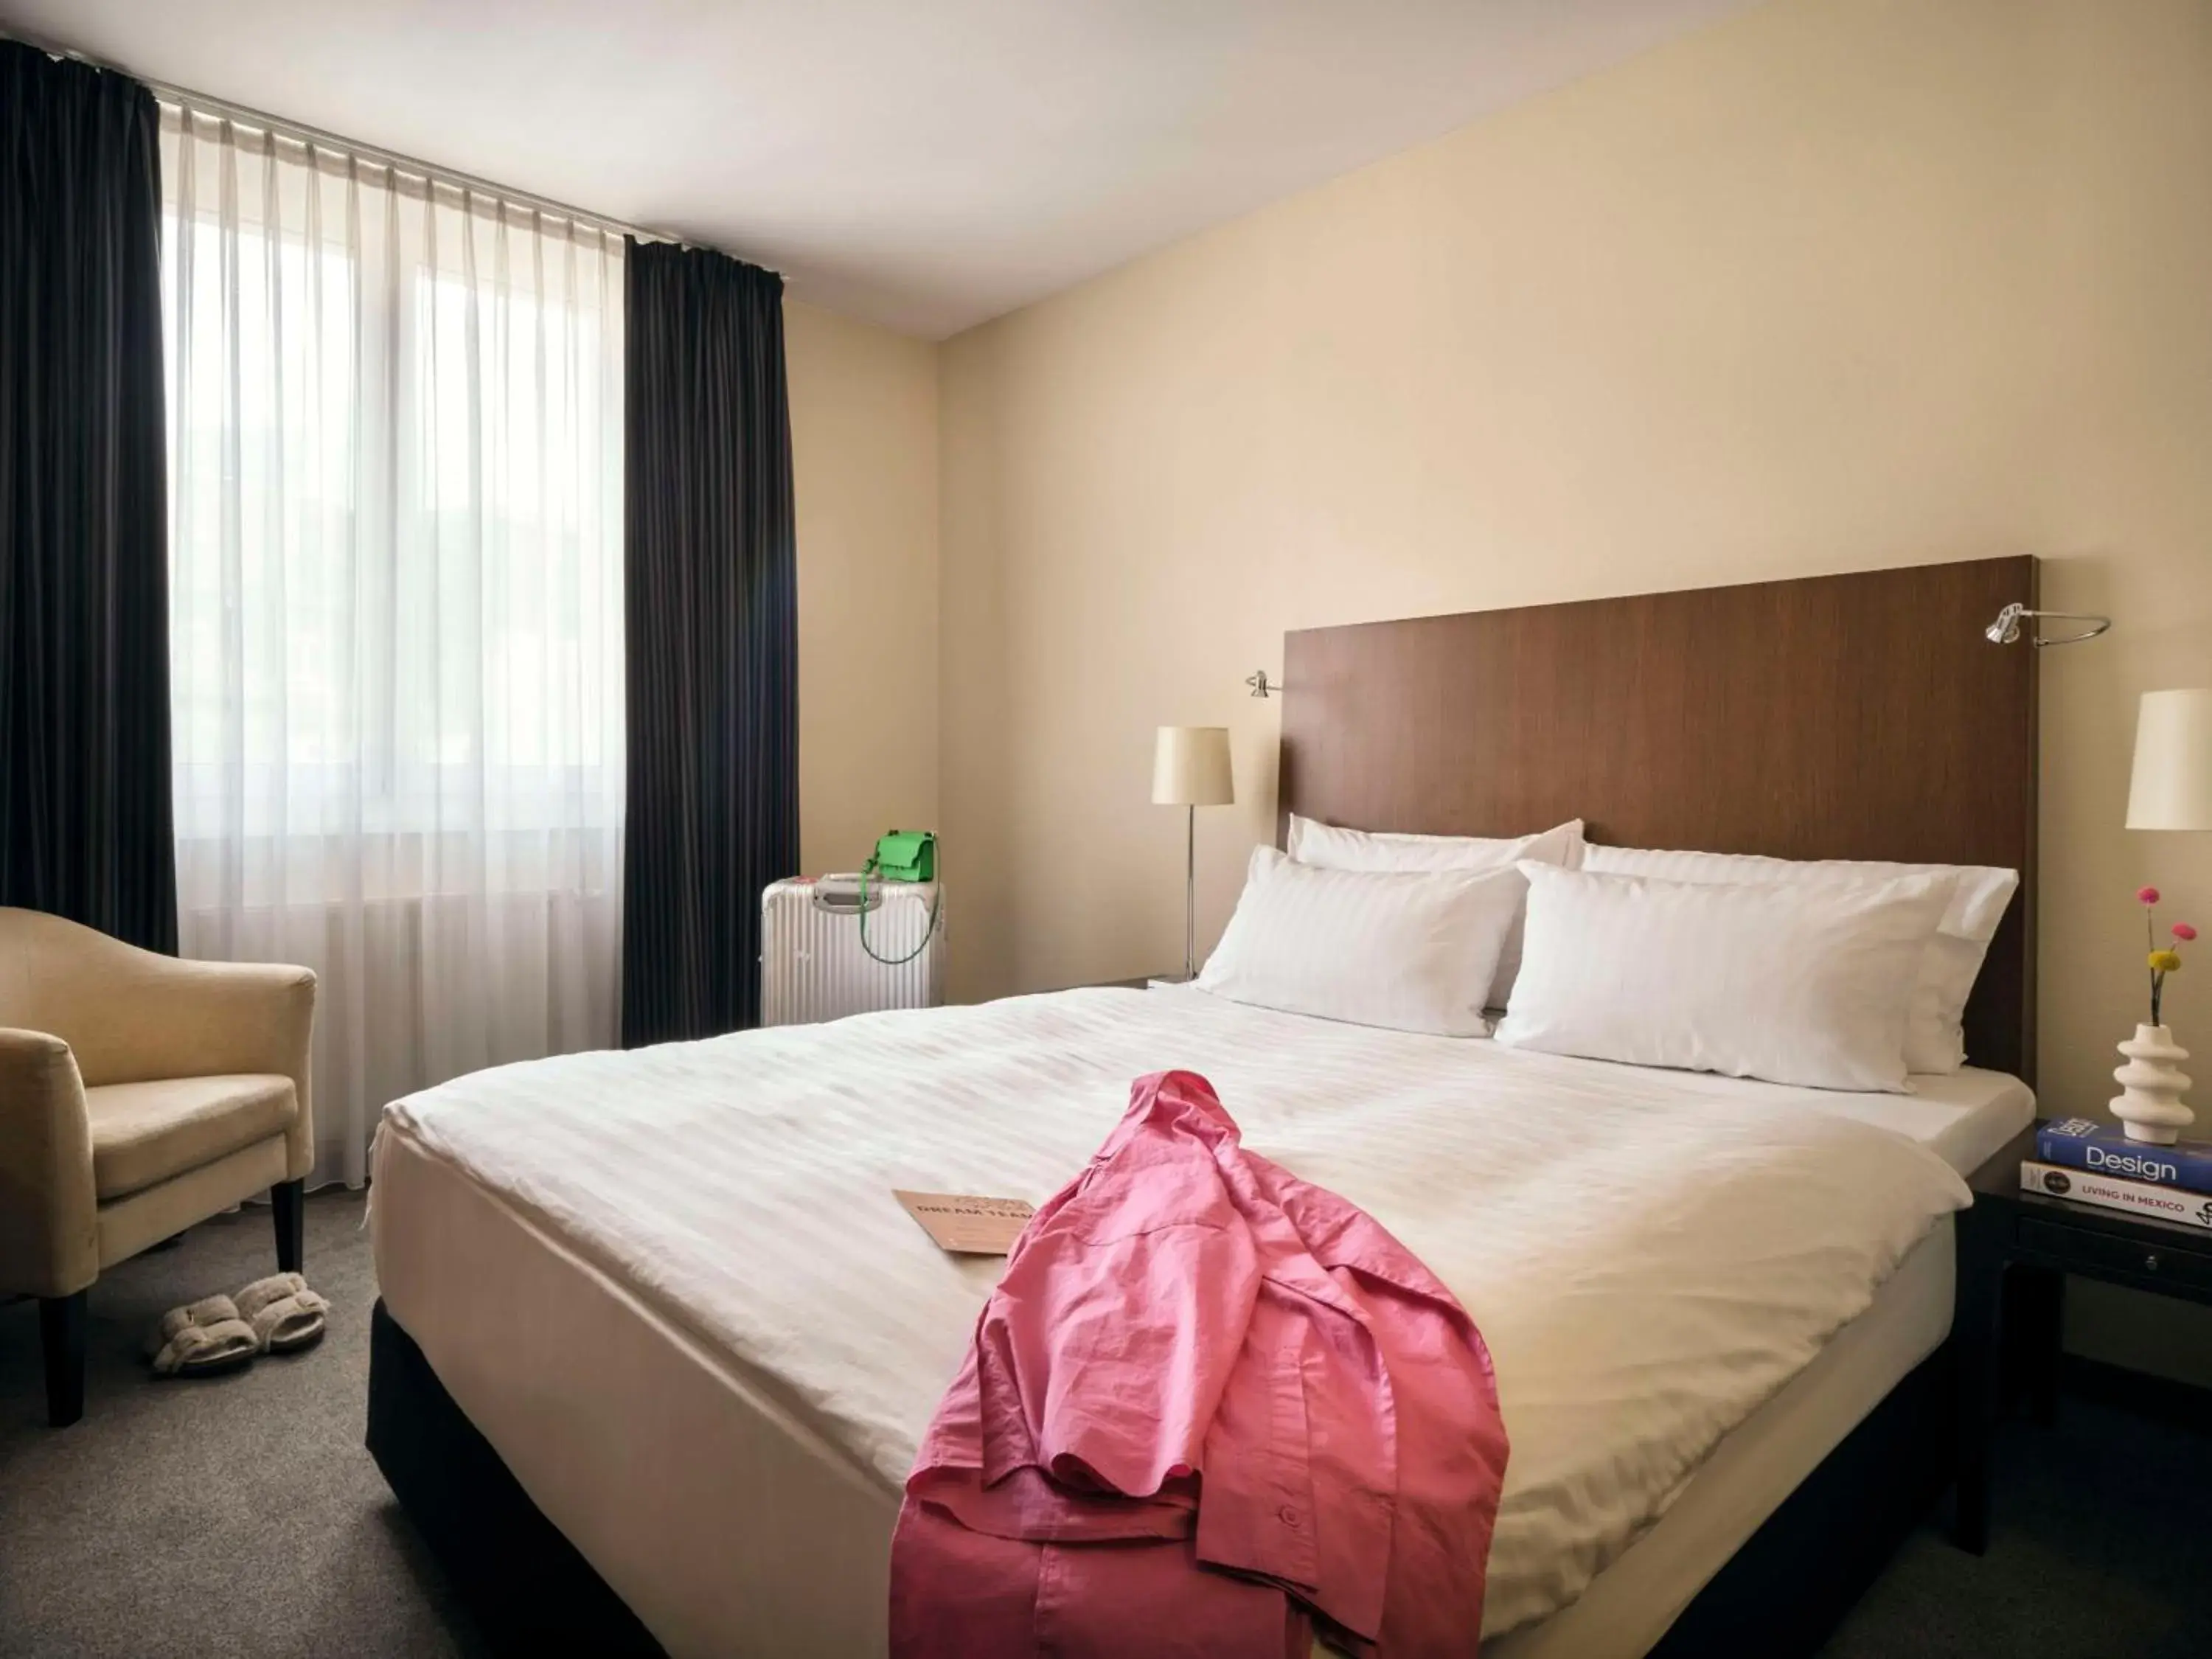 Bedroom, Bed in Metropolitan Hotel by Flemings